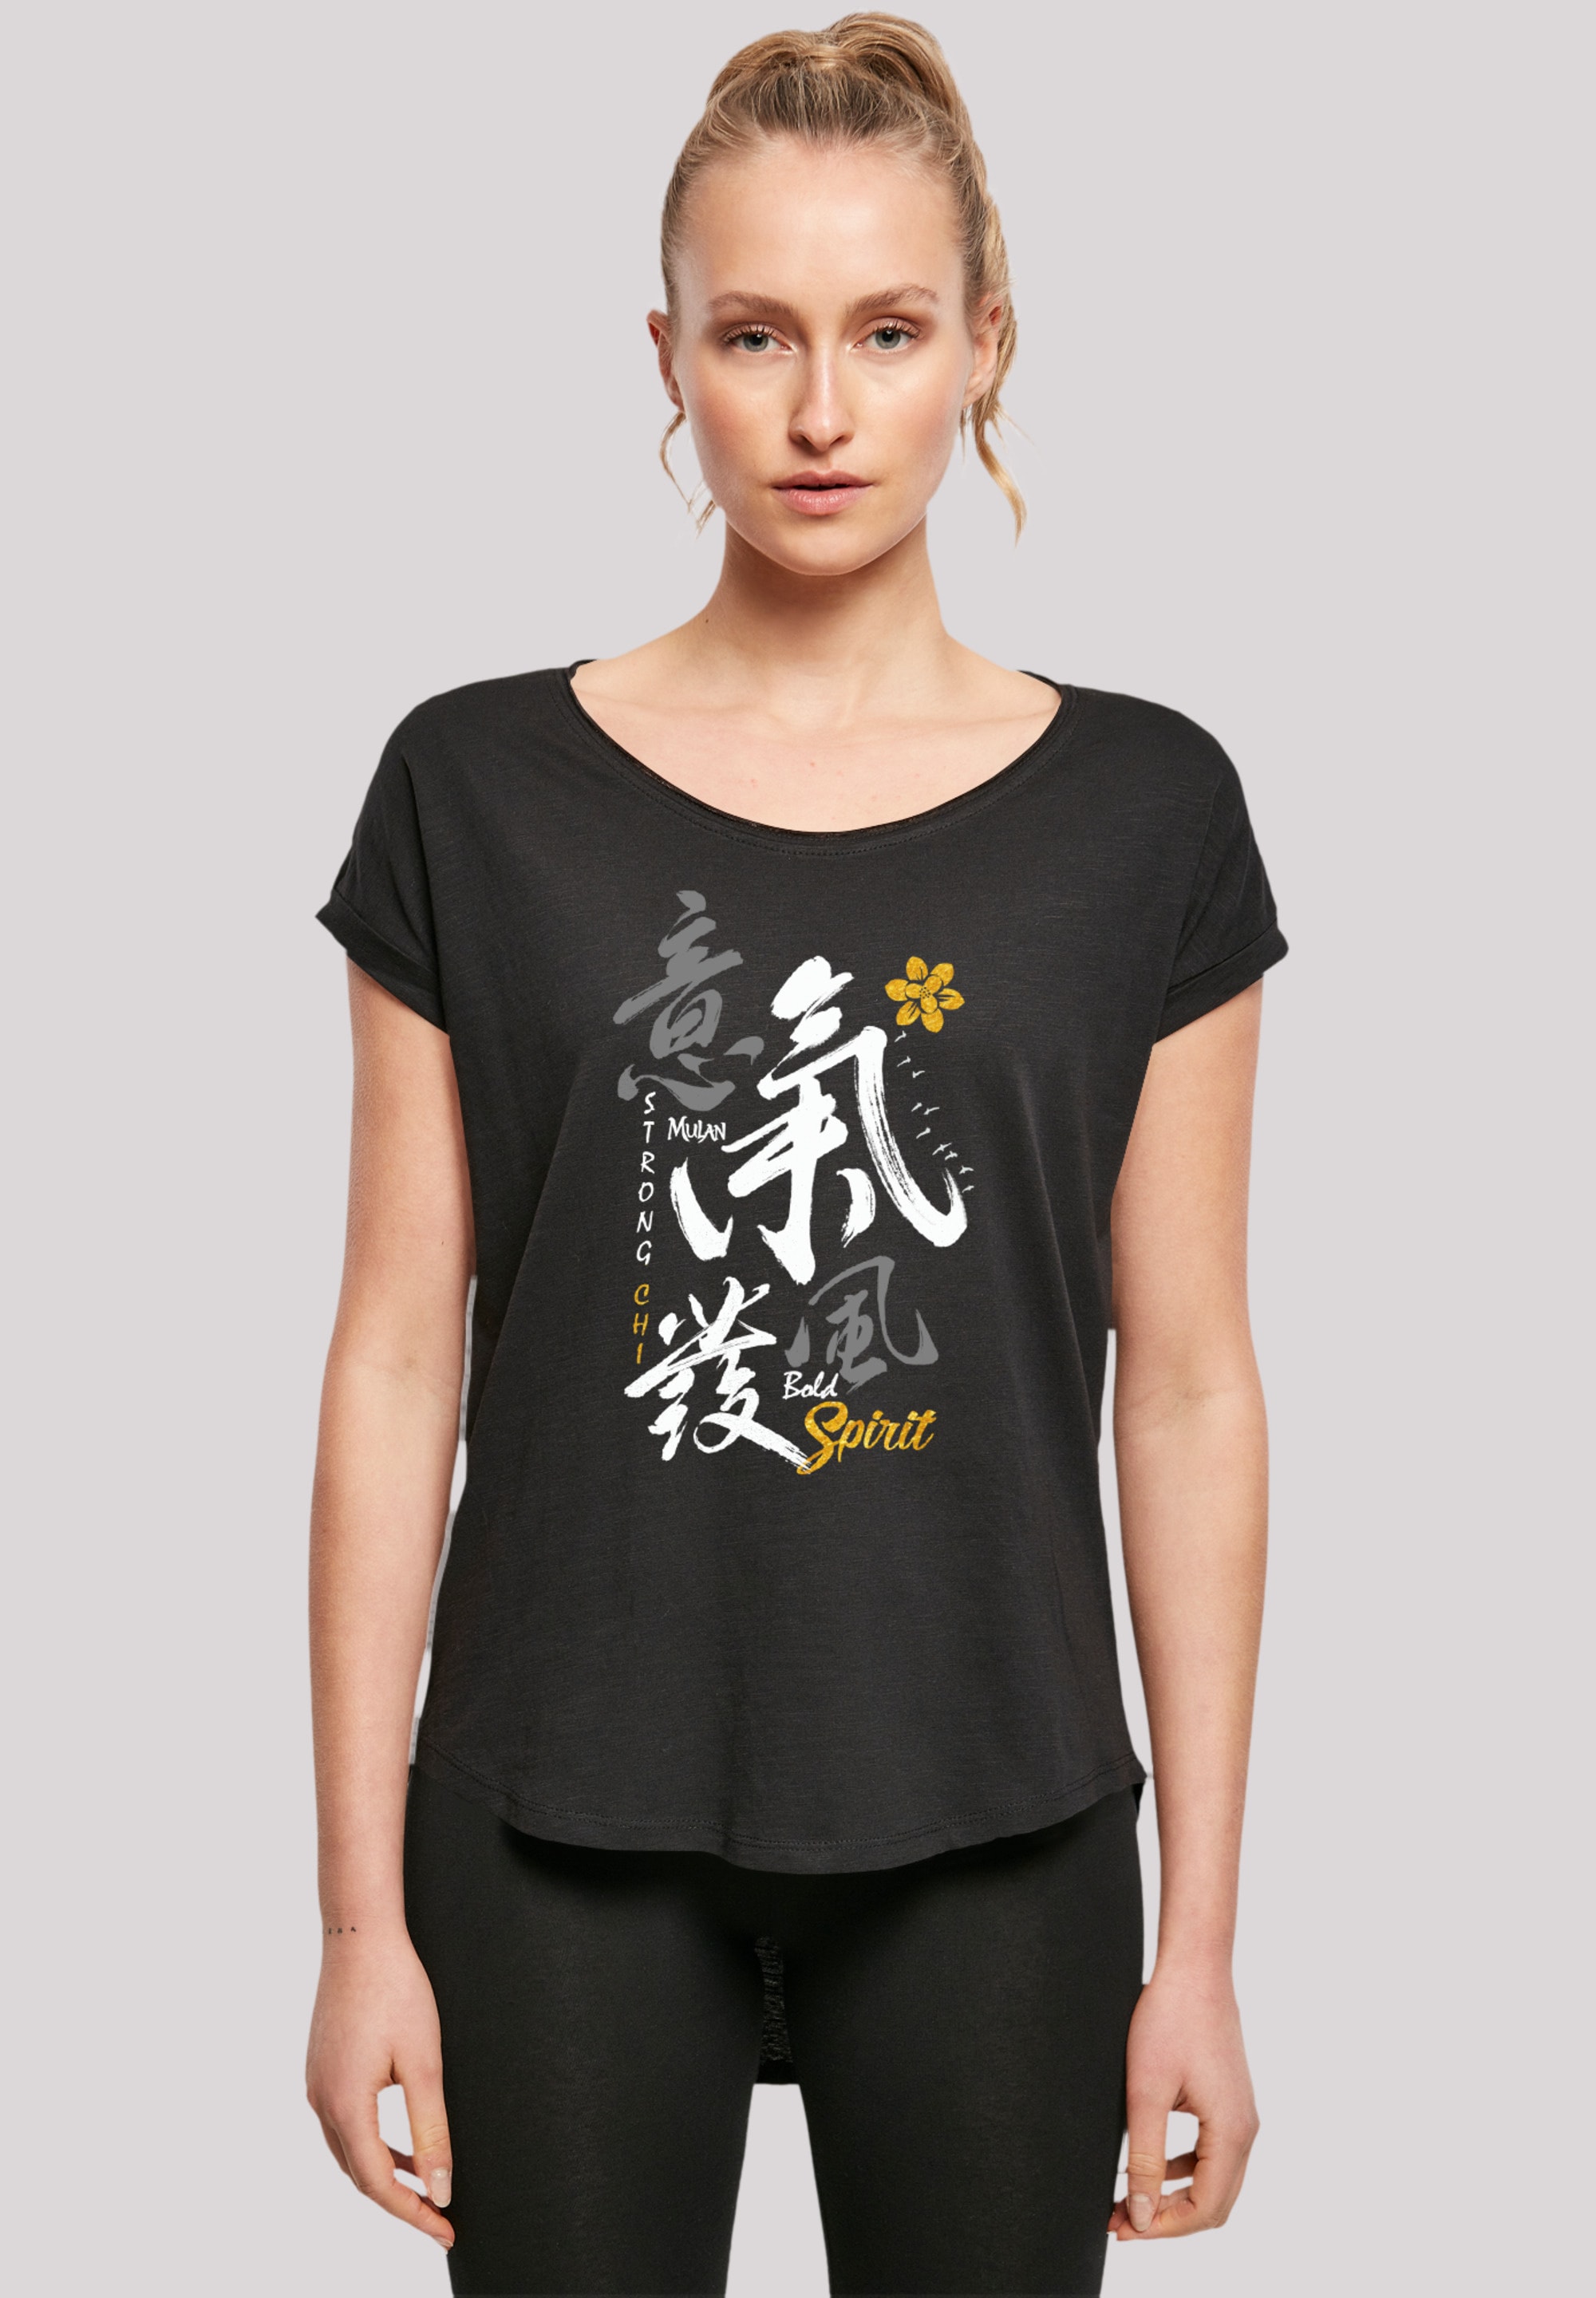 I\'m kaufen »Disney Mulan F4NT4STIC Bold Spirit«, walking Qualität Premium T-Shirt online |